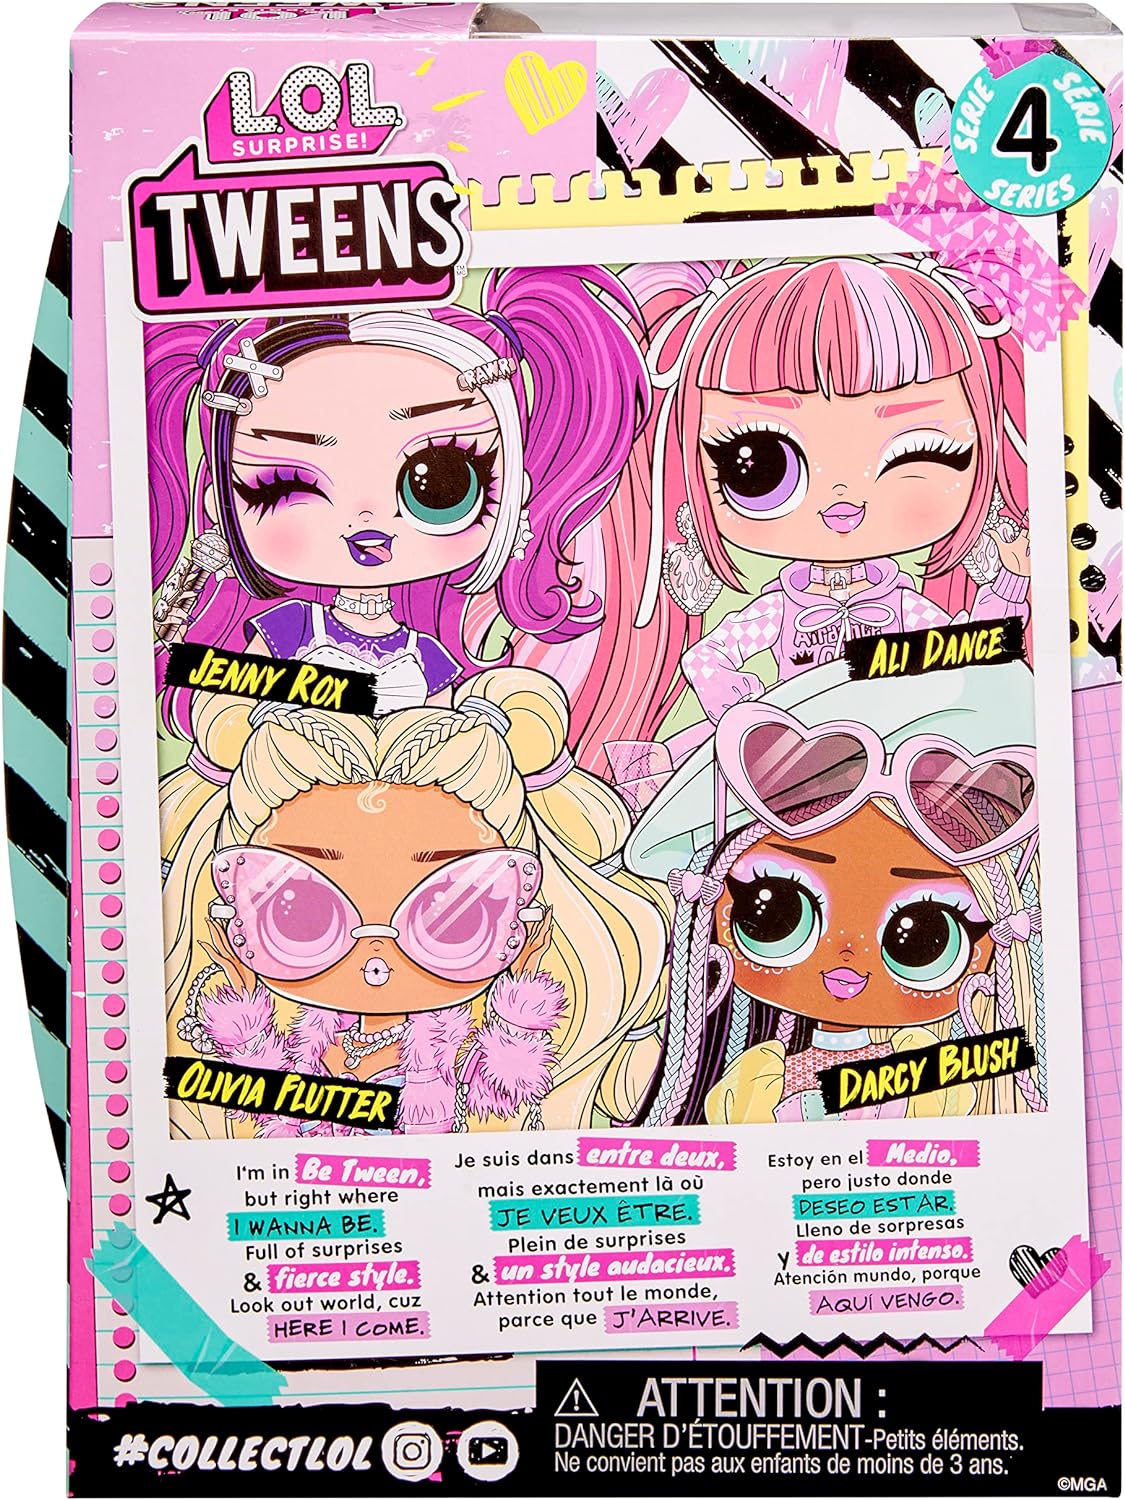 LOL Surprise Boneca fashion Tweens Série 4 - DARCY BLUSH - Unbox 15 surpresas e acessórios fabulosos - Ótimo presente para crianças de 4 anos ou mais